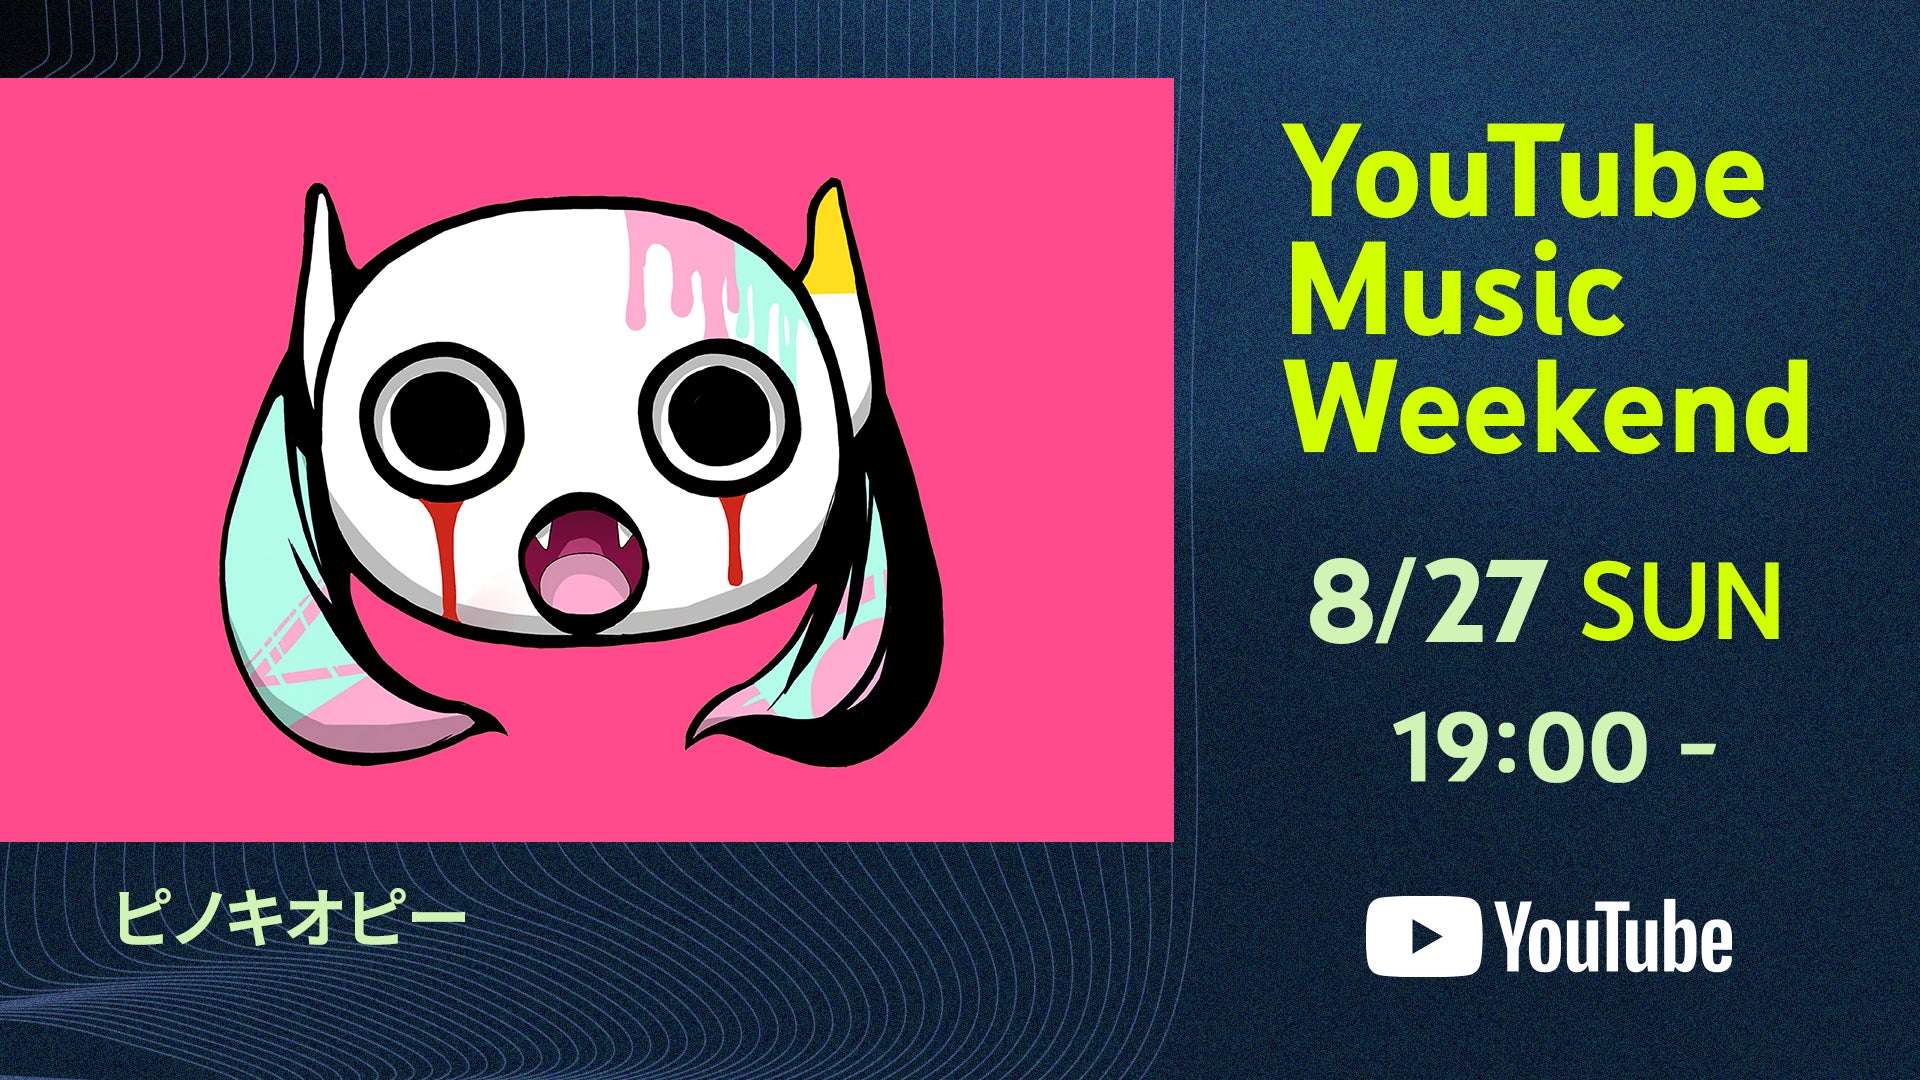 ピノキオピーがYouTube Music Weekend 7.0 supported by docomo のヘッドライナーとして参加決定！ワンマンライブ「MIMIC」の映像を配信のサブ画像1